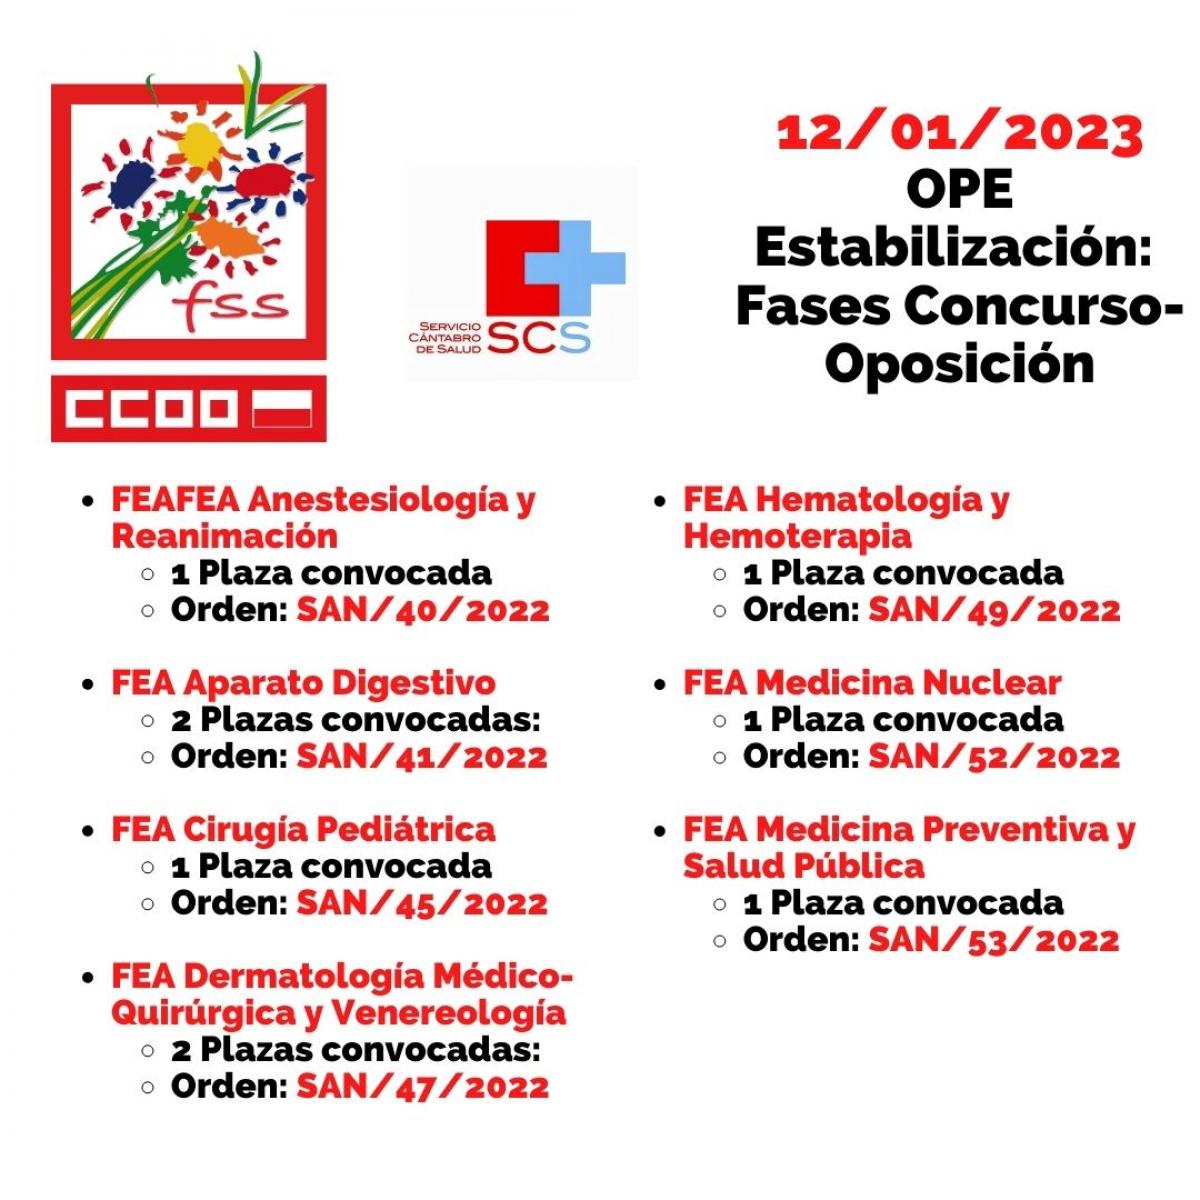 OPE Estabilización, convocatorias 12/01/2023